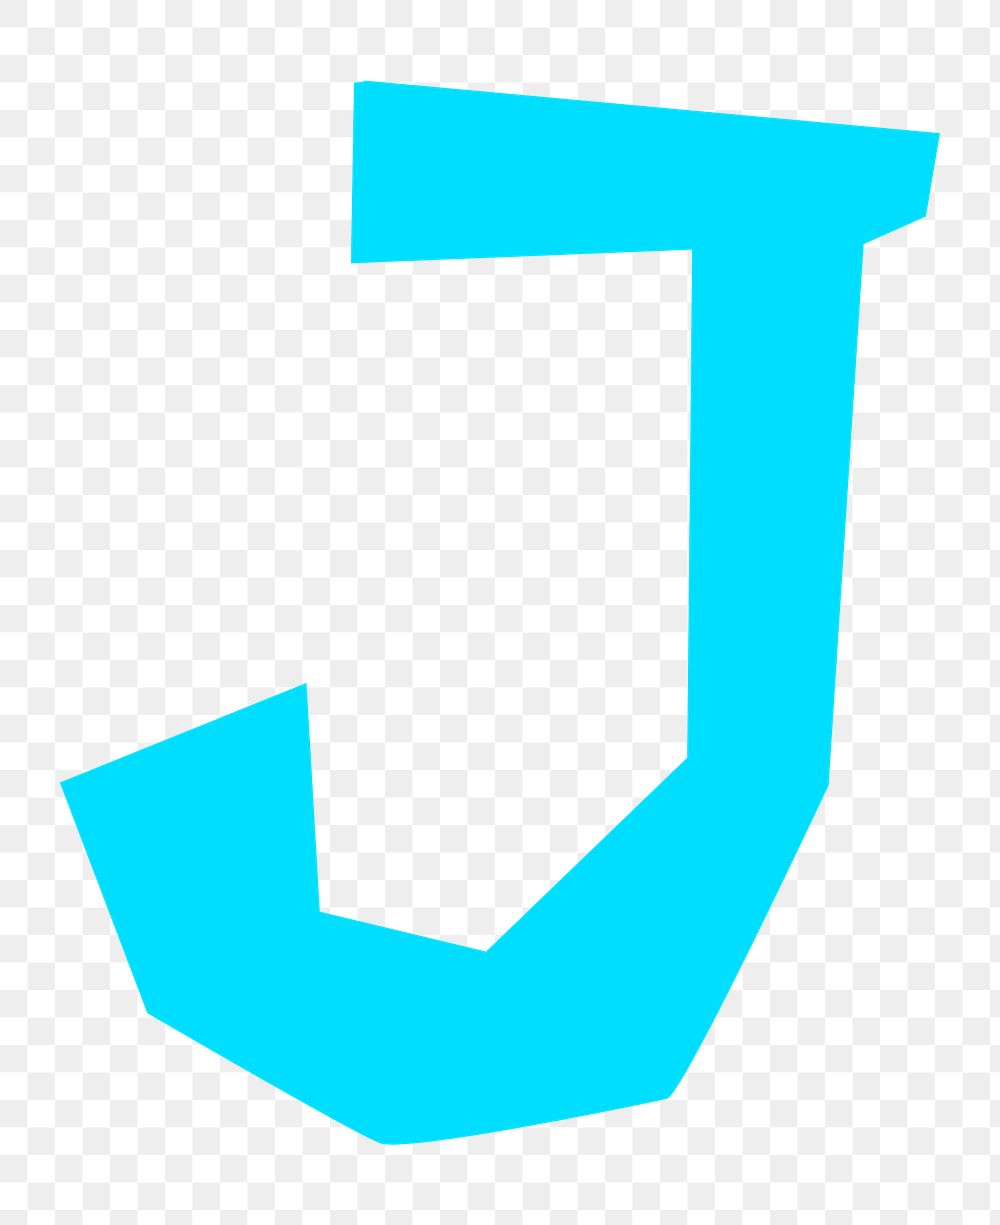 Letter J png in blue paper cut shape font, transparent background